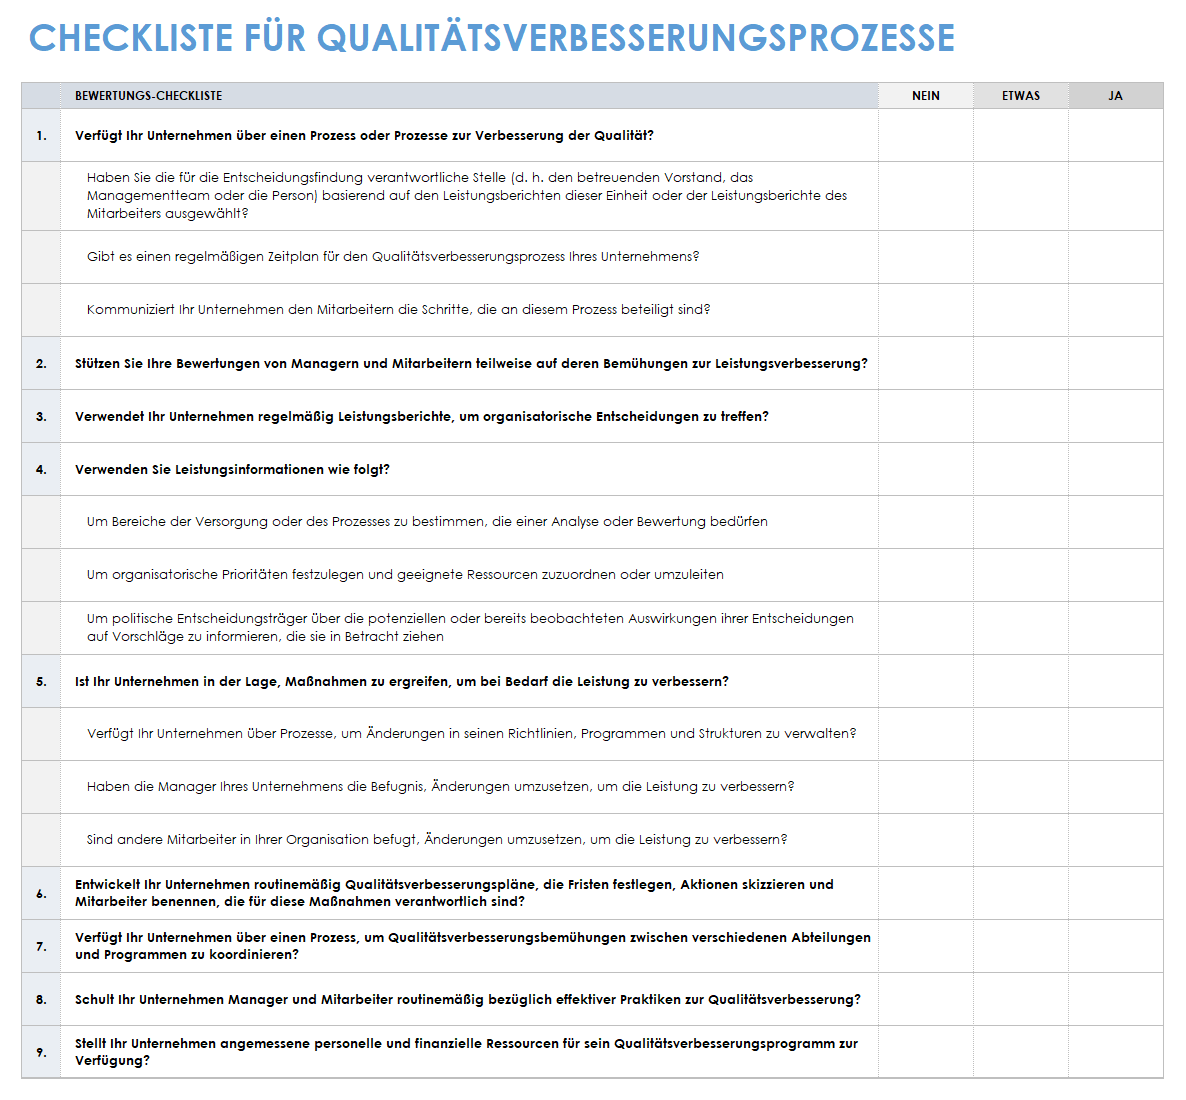 Vorlage für eine Checkliste für den Qualitätsverbesserungsprozess